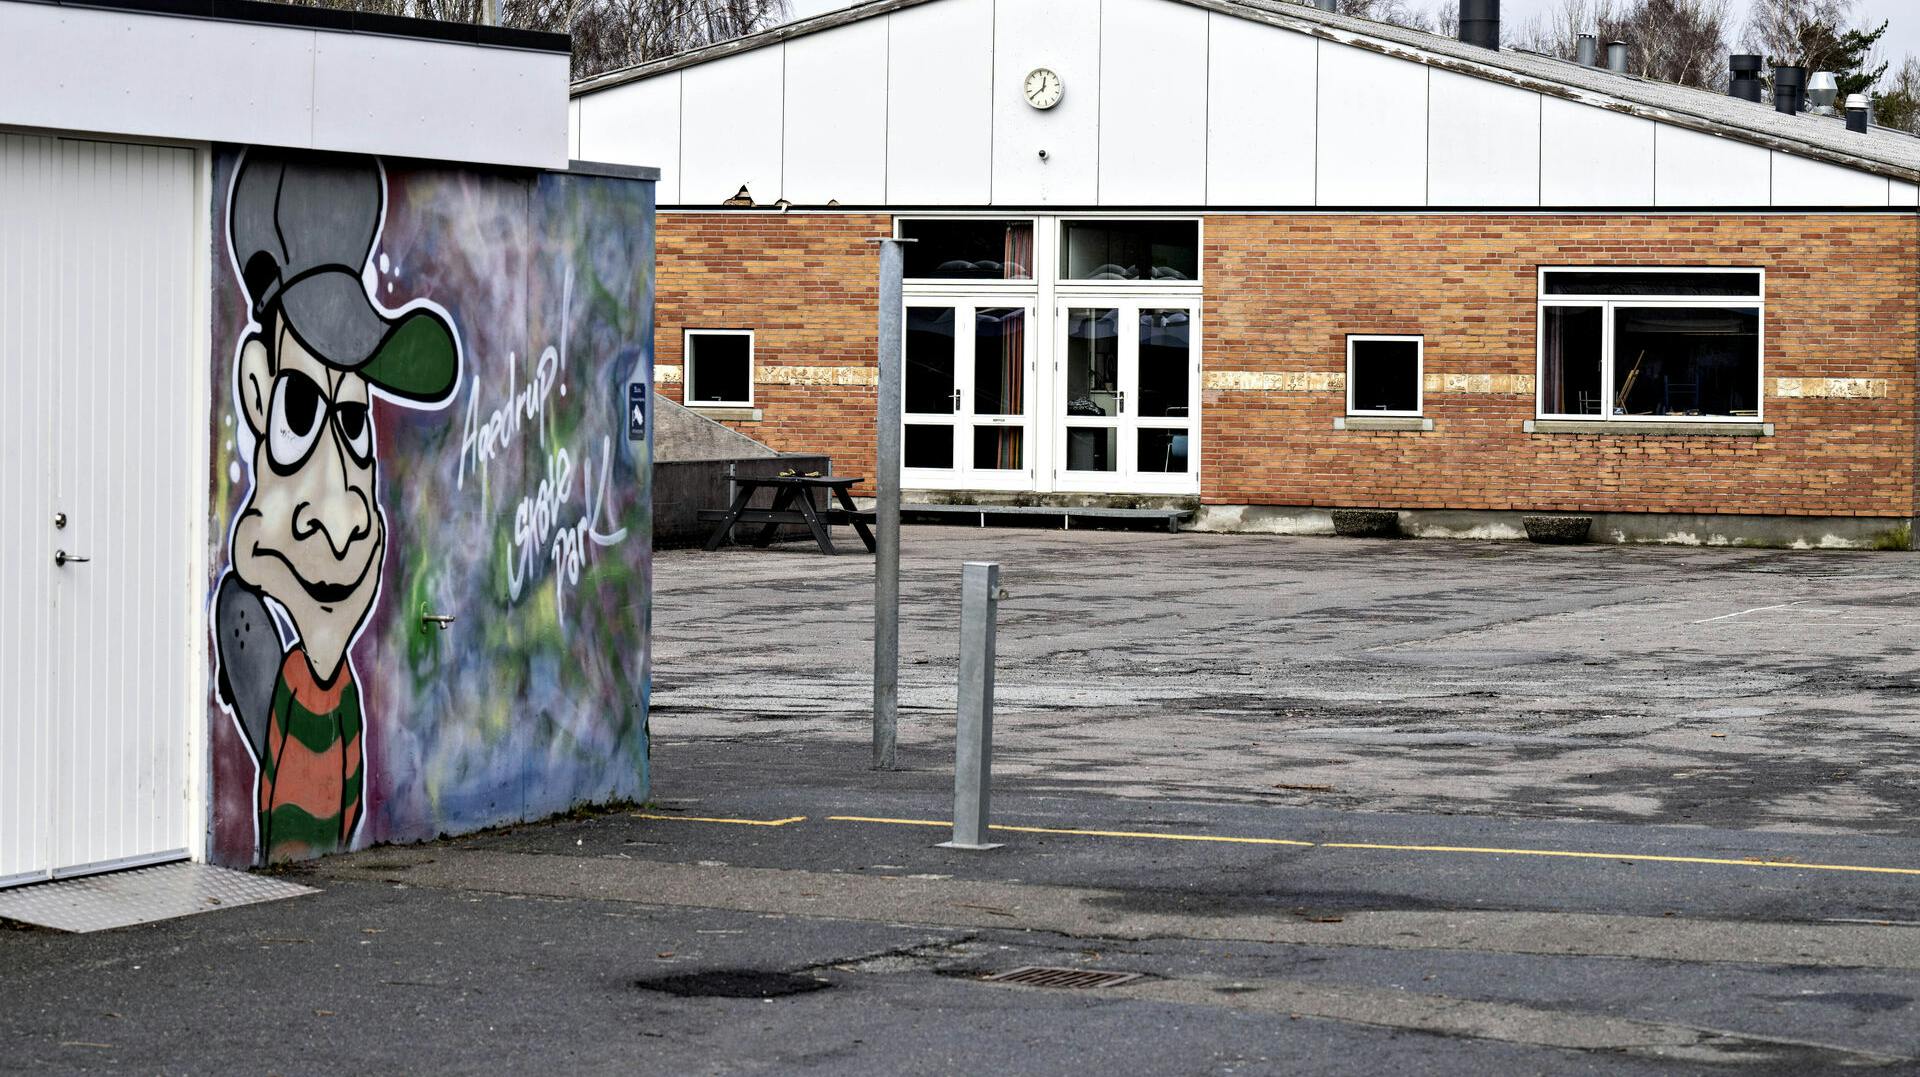 Agedrup Skole i Odense Kommune har den seneste tid været genstand for stor kritik i forbindelse med voldsomme episoder blandt eleverne - fredag har politiet været til stede på skolen, fordi en elev angiveligt er blevet truet med en kniv.